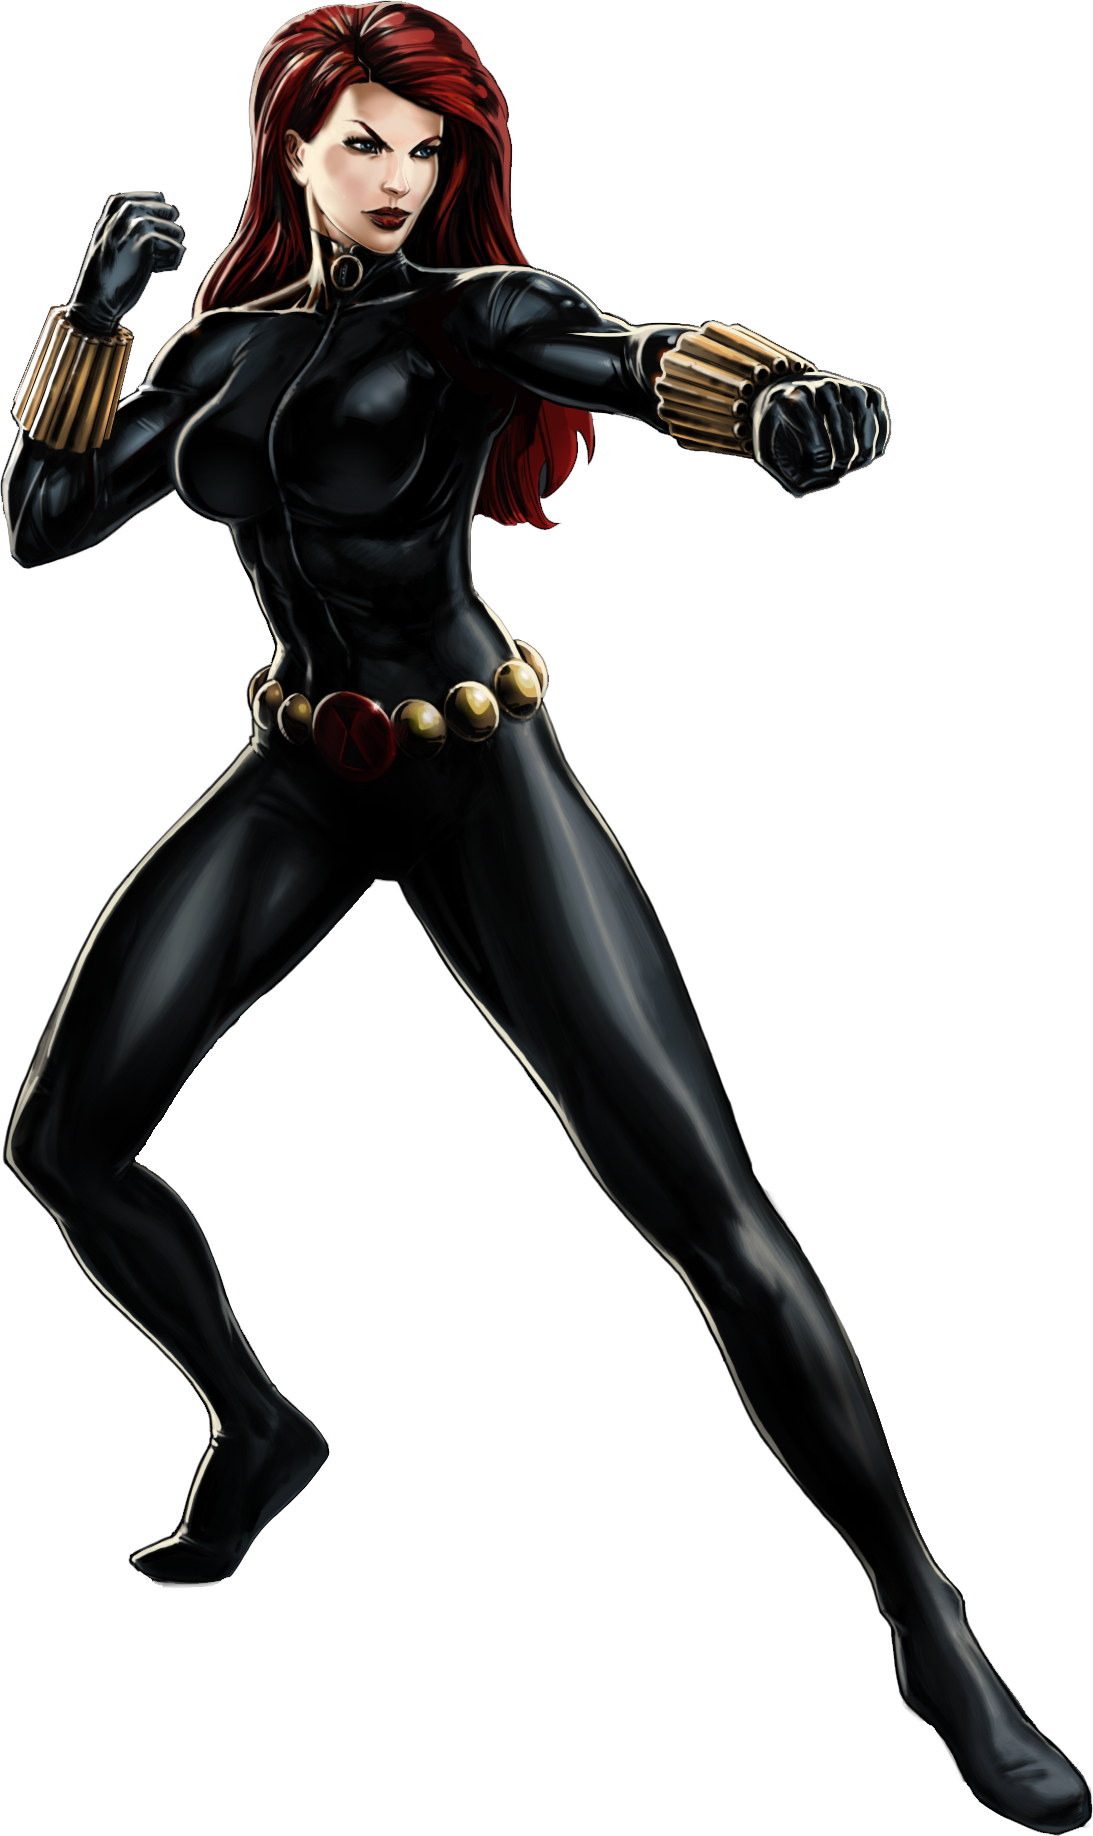 Image From Httpwww - Marvel Com Black Widow (1093x1836)